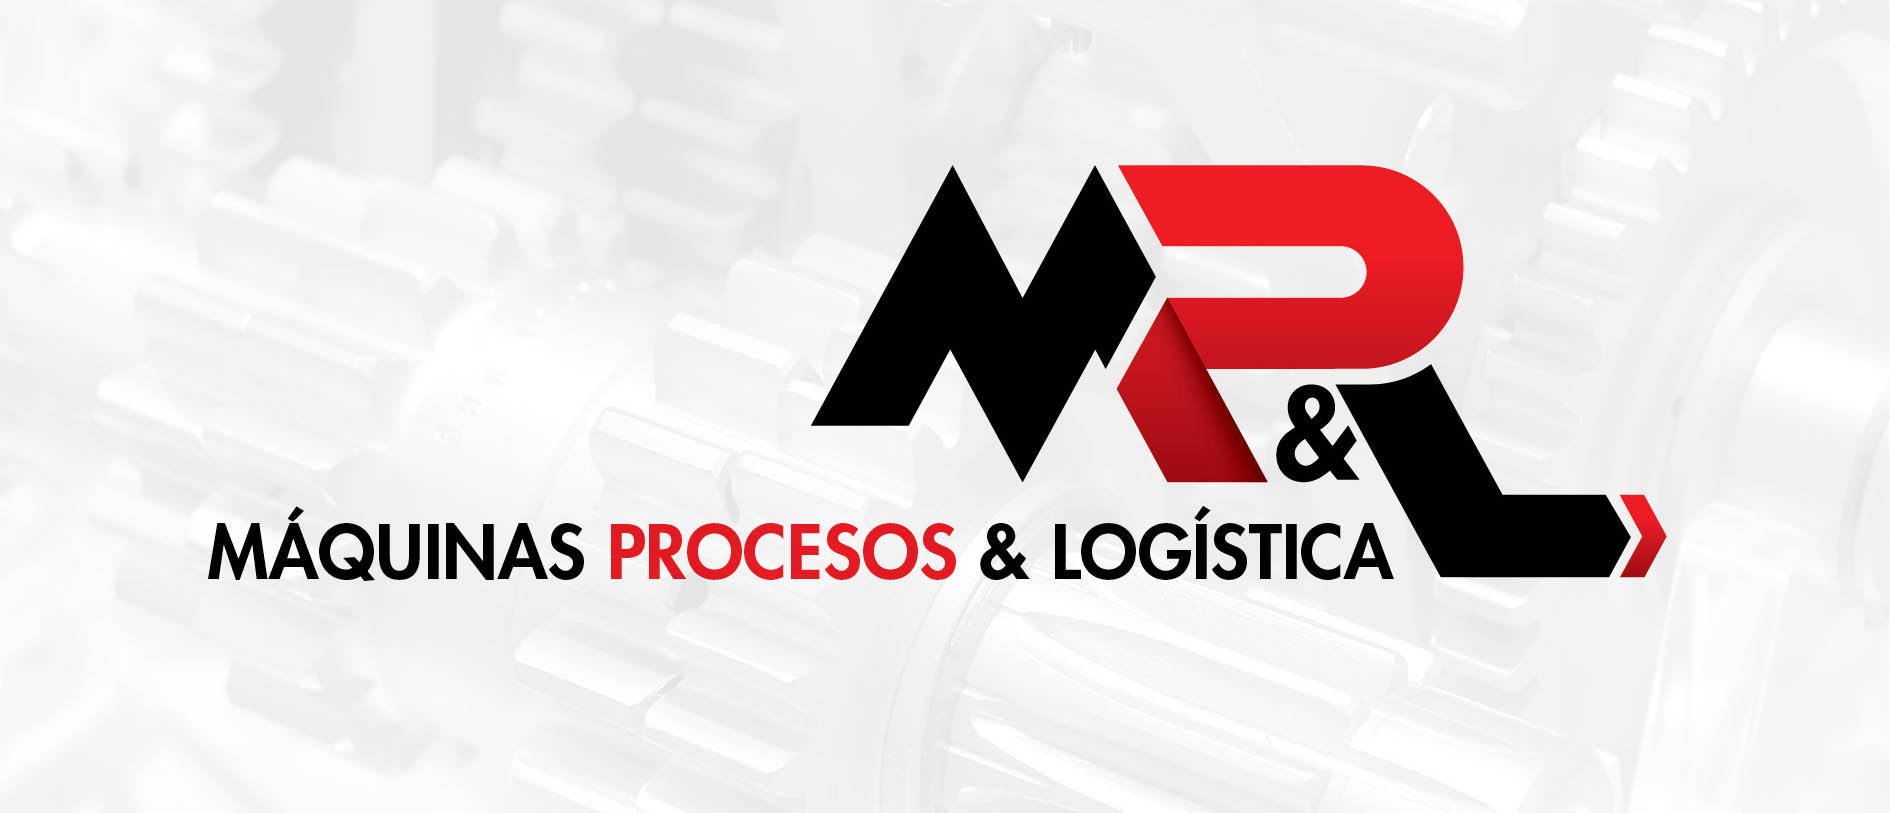 Rediseño de Logo MPL Maquinas Procesos y Logística